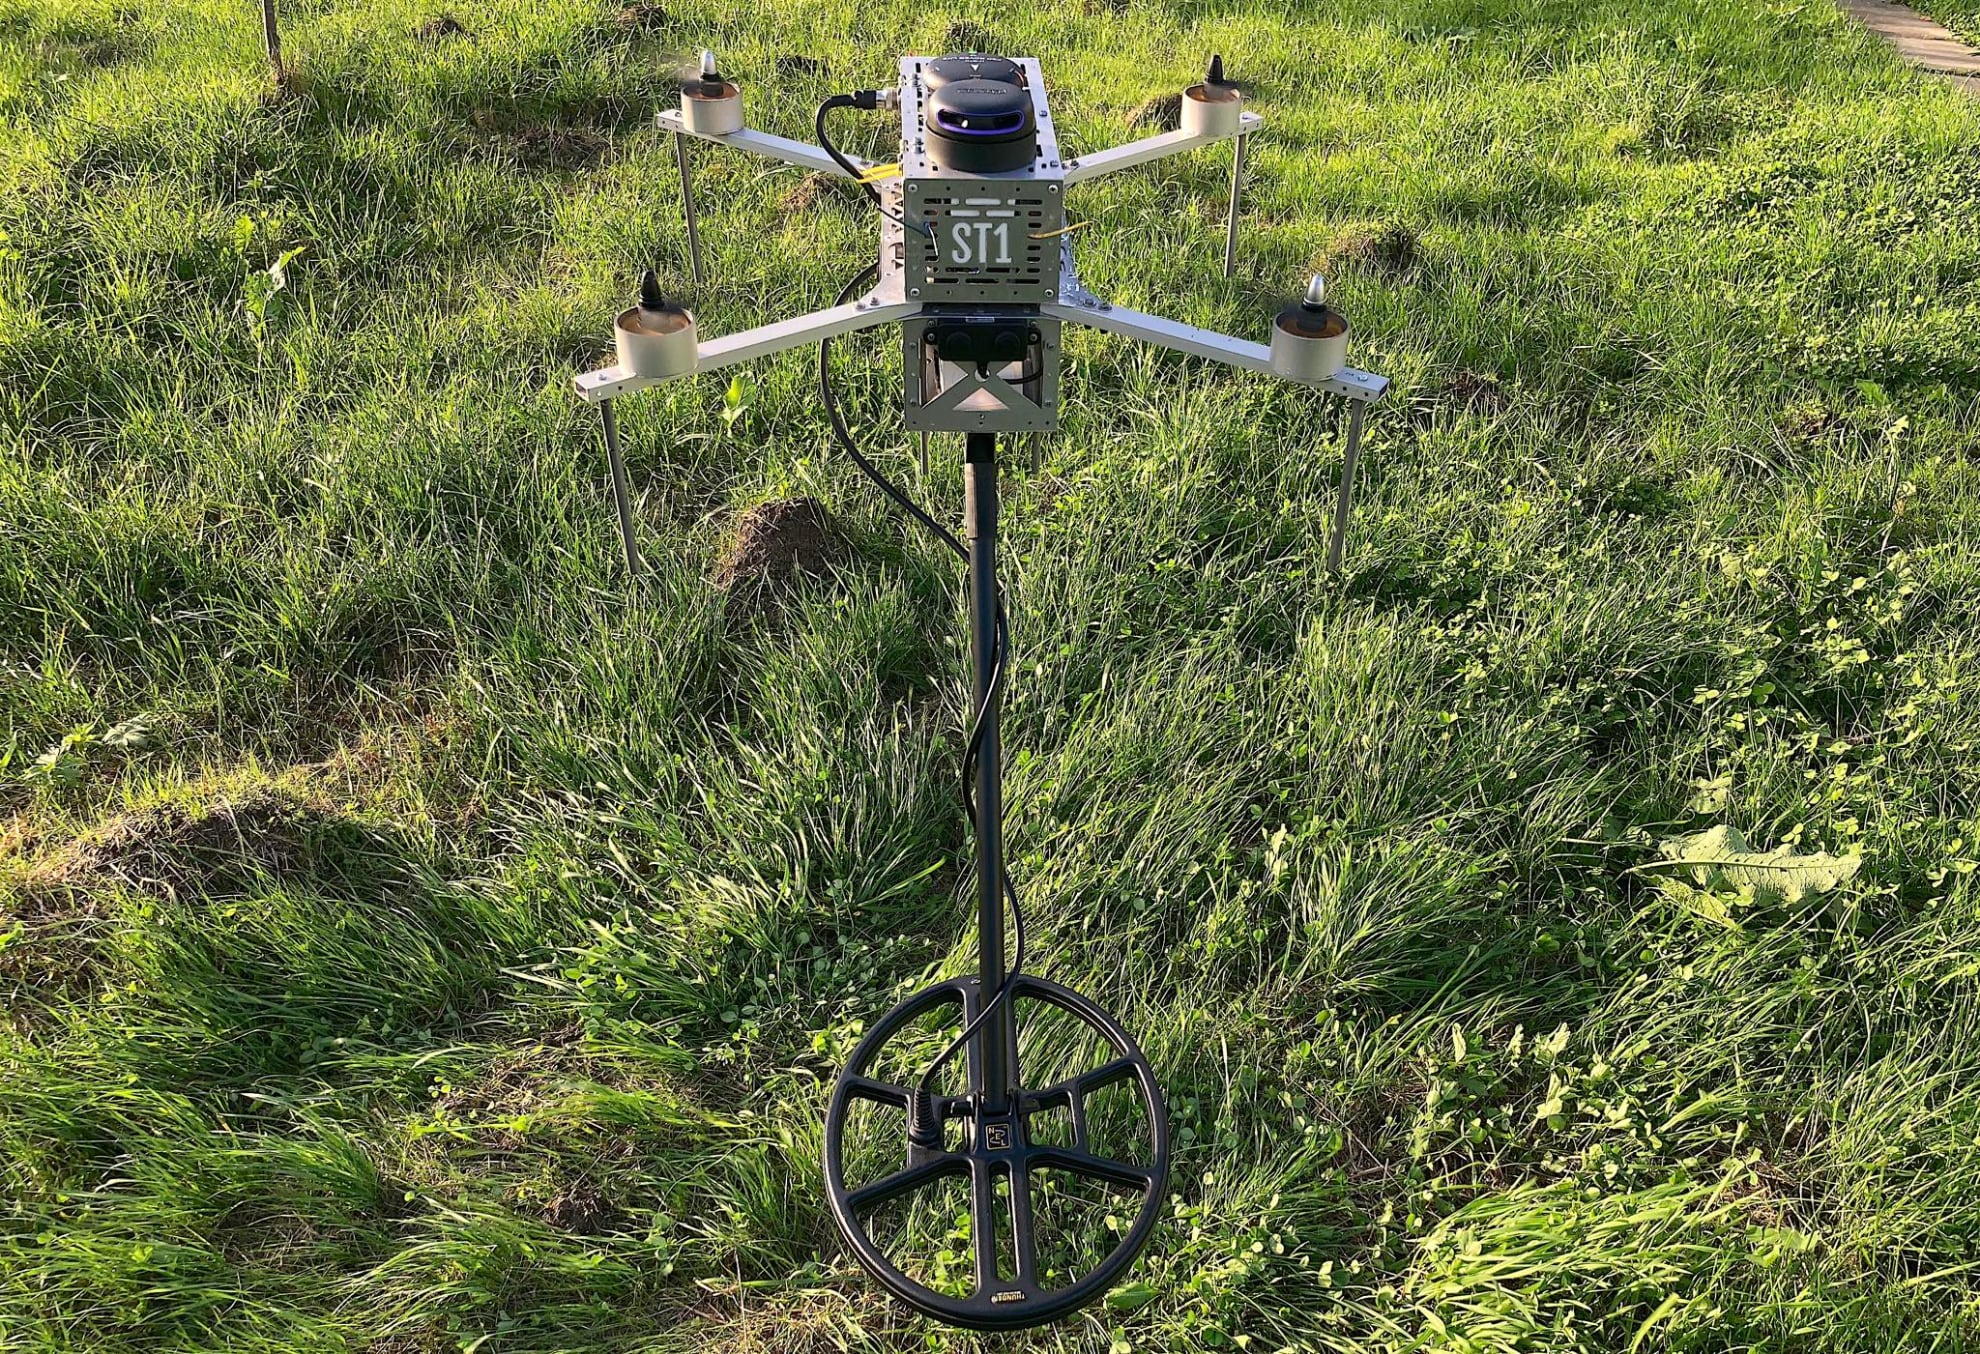 Ukraina prezentuje drona rozminowującego ST1, który działa 4 razy szybciej niż człowiek